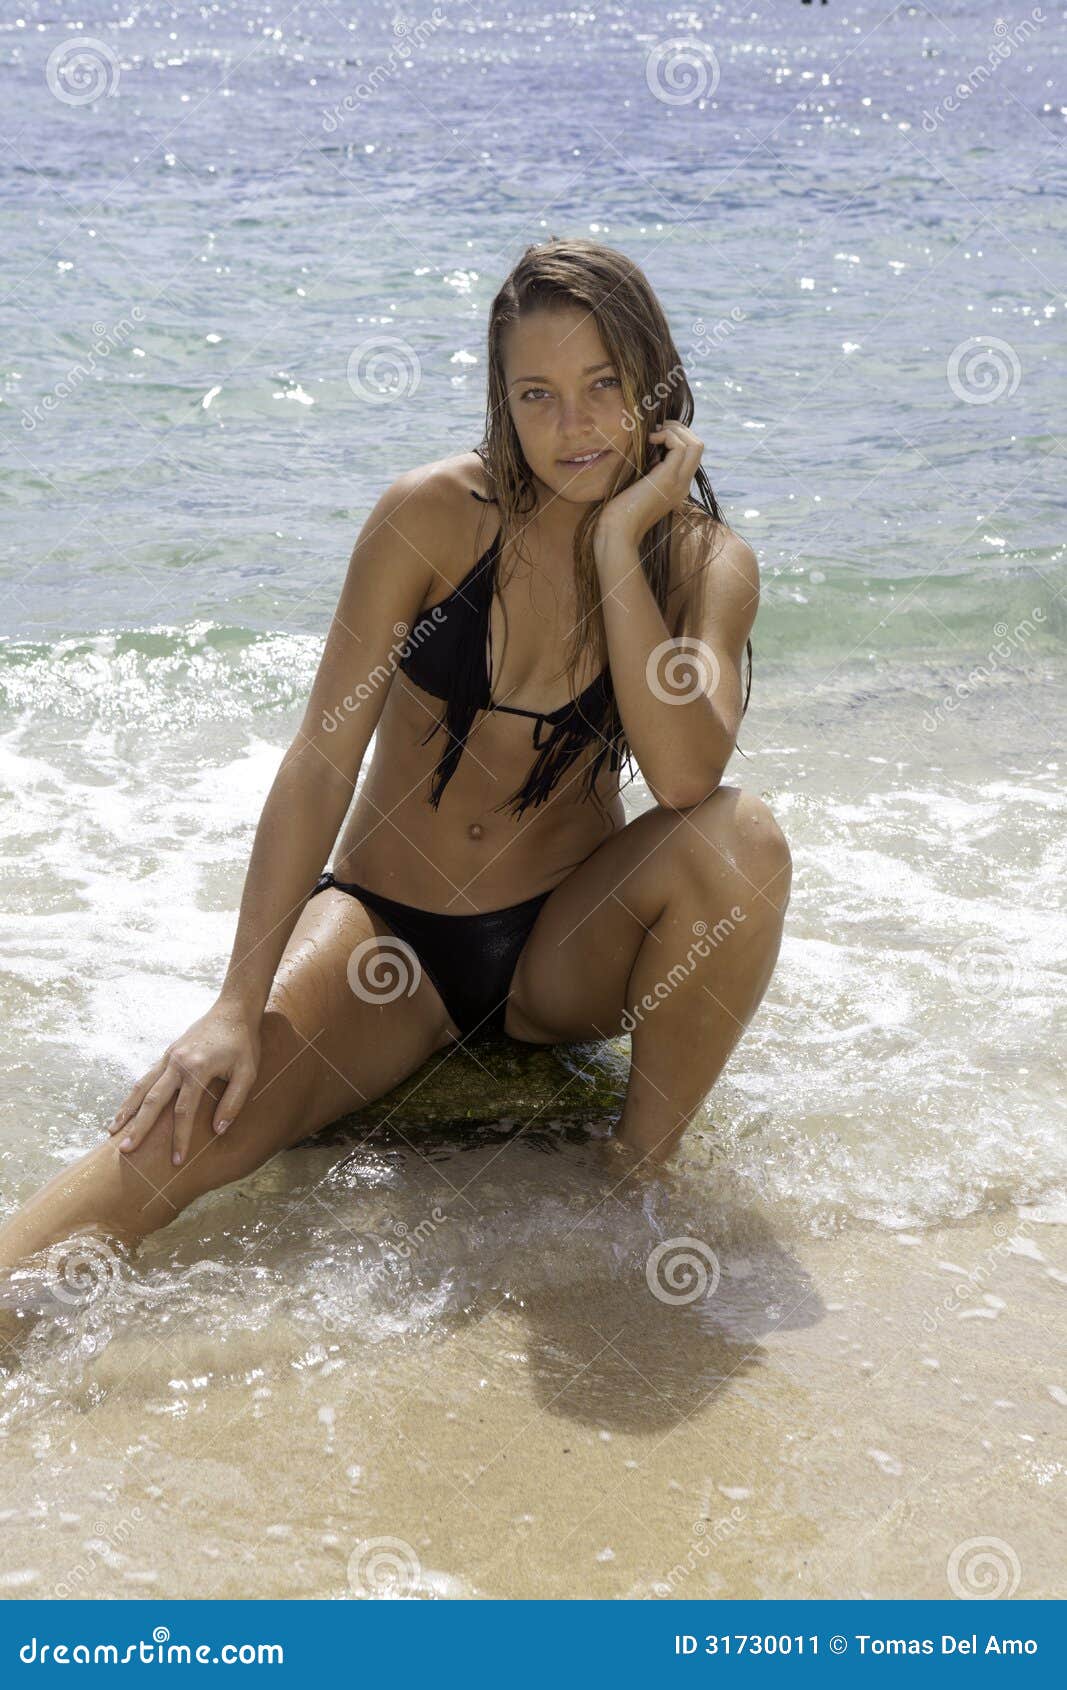 girl in bikini at the beach